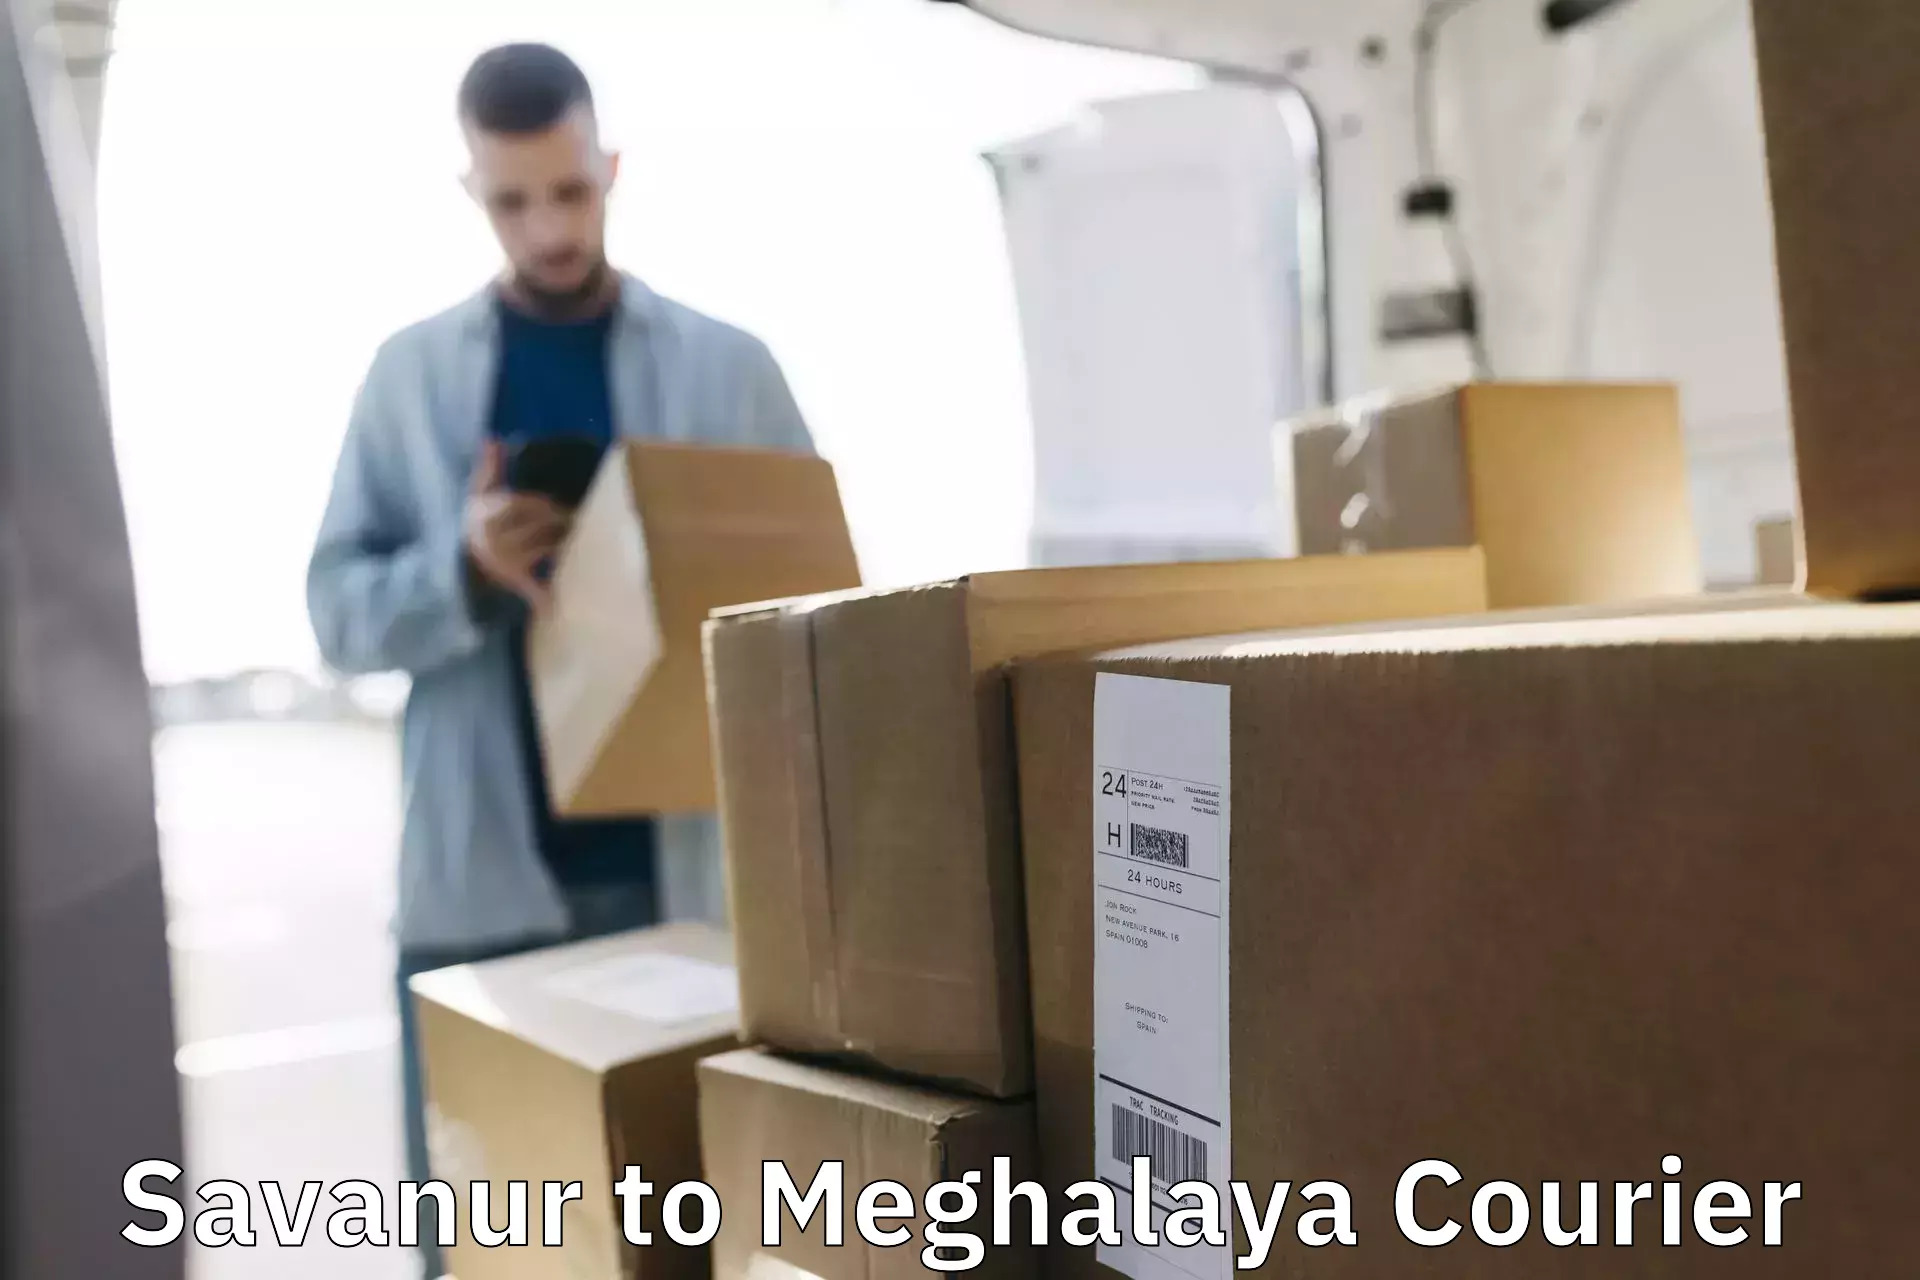 Next-generation courier services Savanur to Dkhiah West